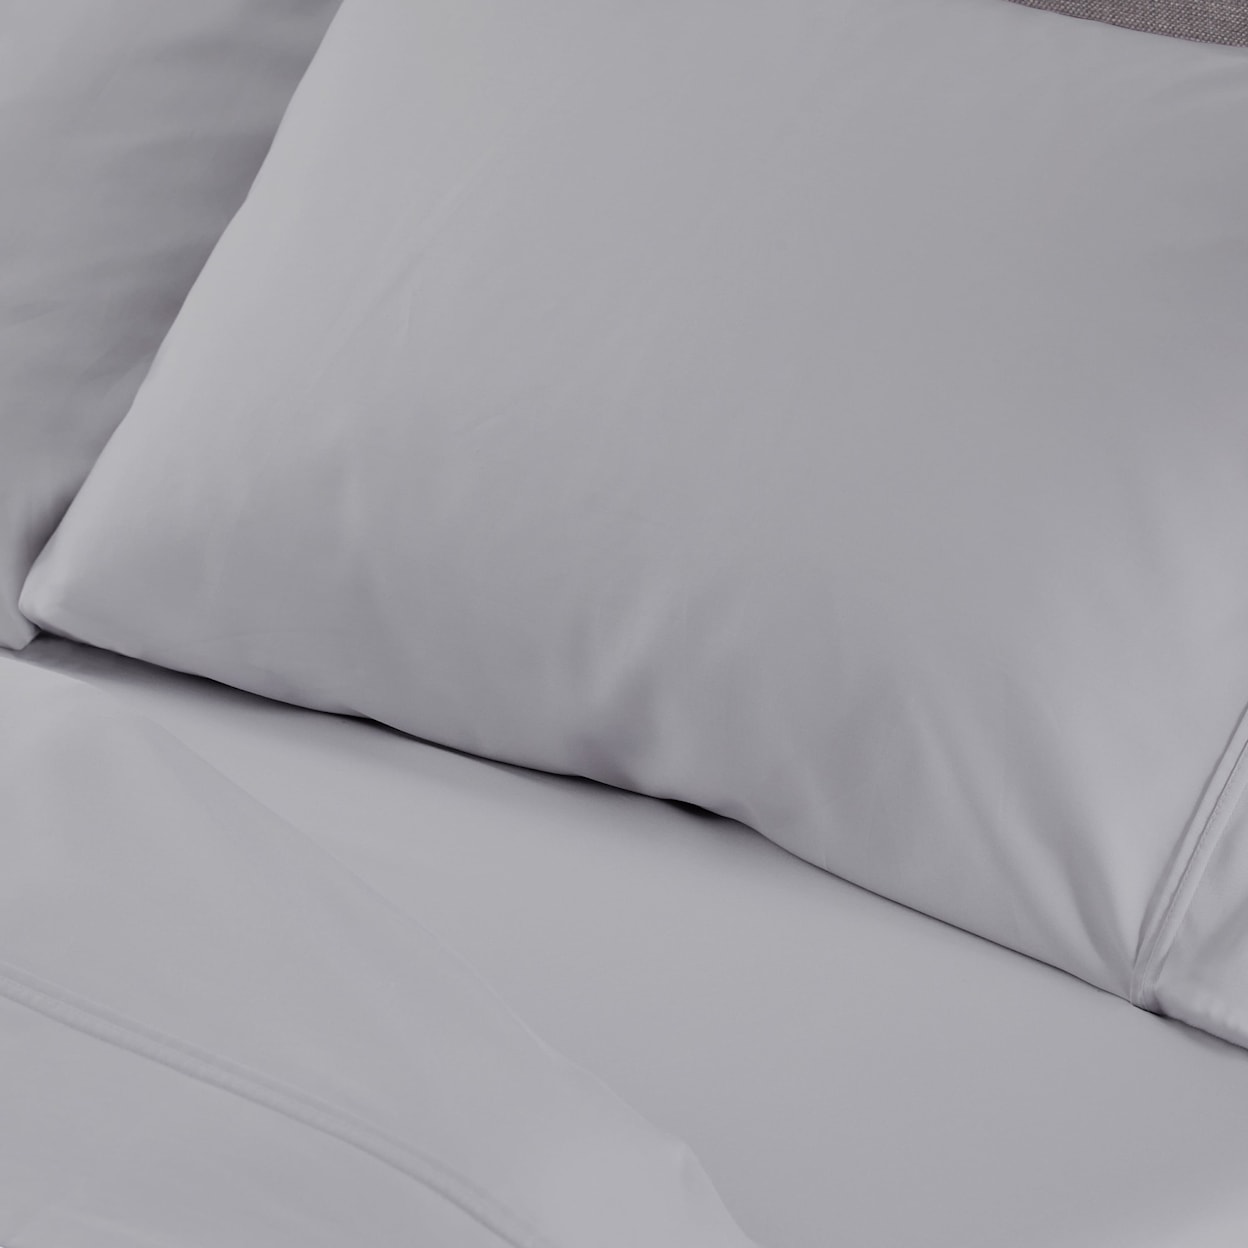 Bedgear Hyper Cotton Sheets Sheet Set,Grey, Queen